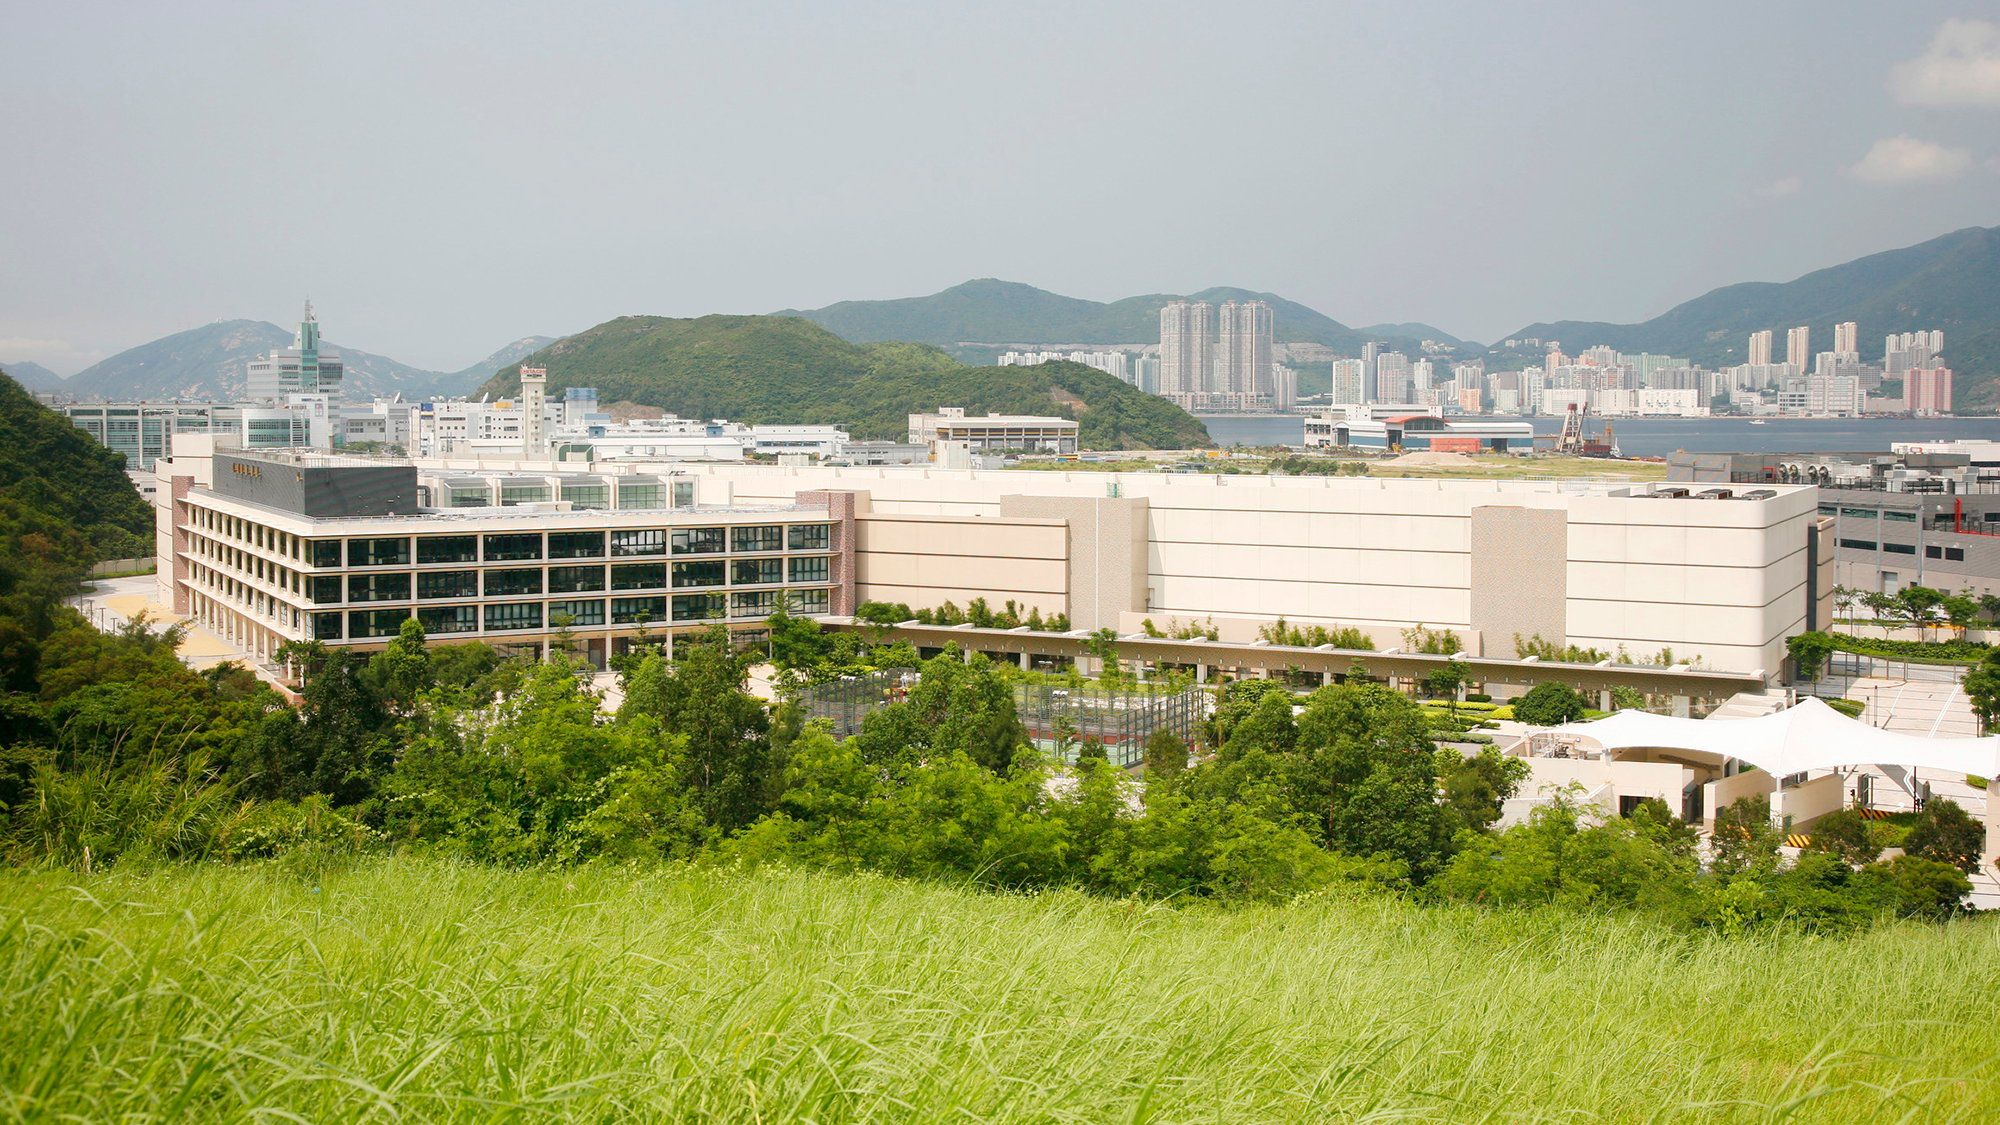 Exterior of HSBC data centre at TKO, Hong Kong